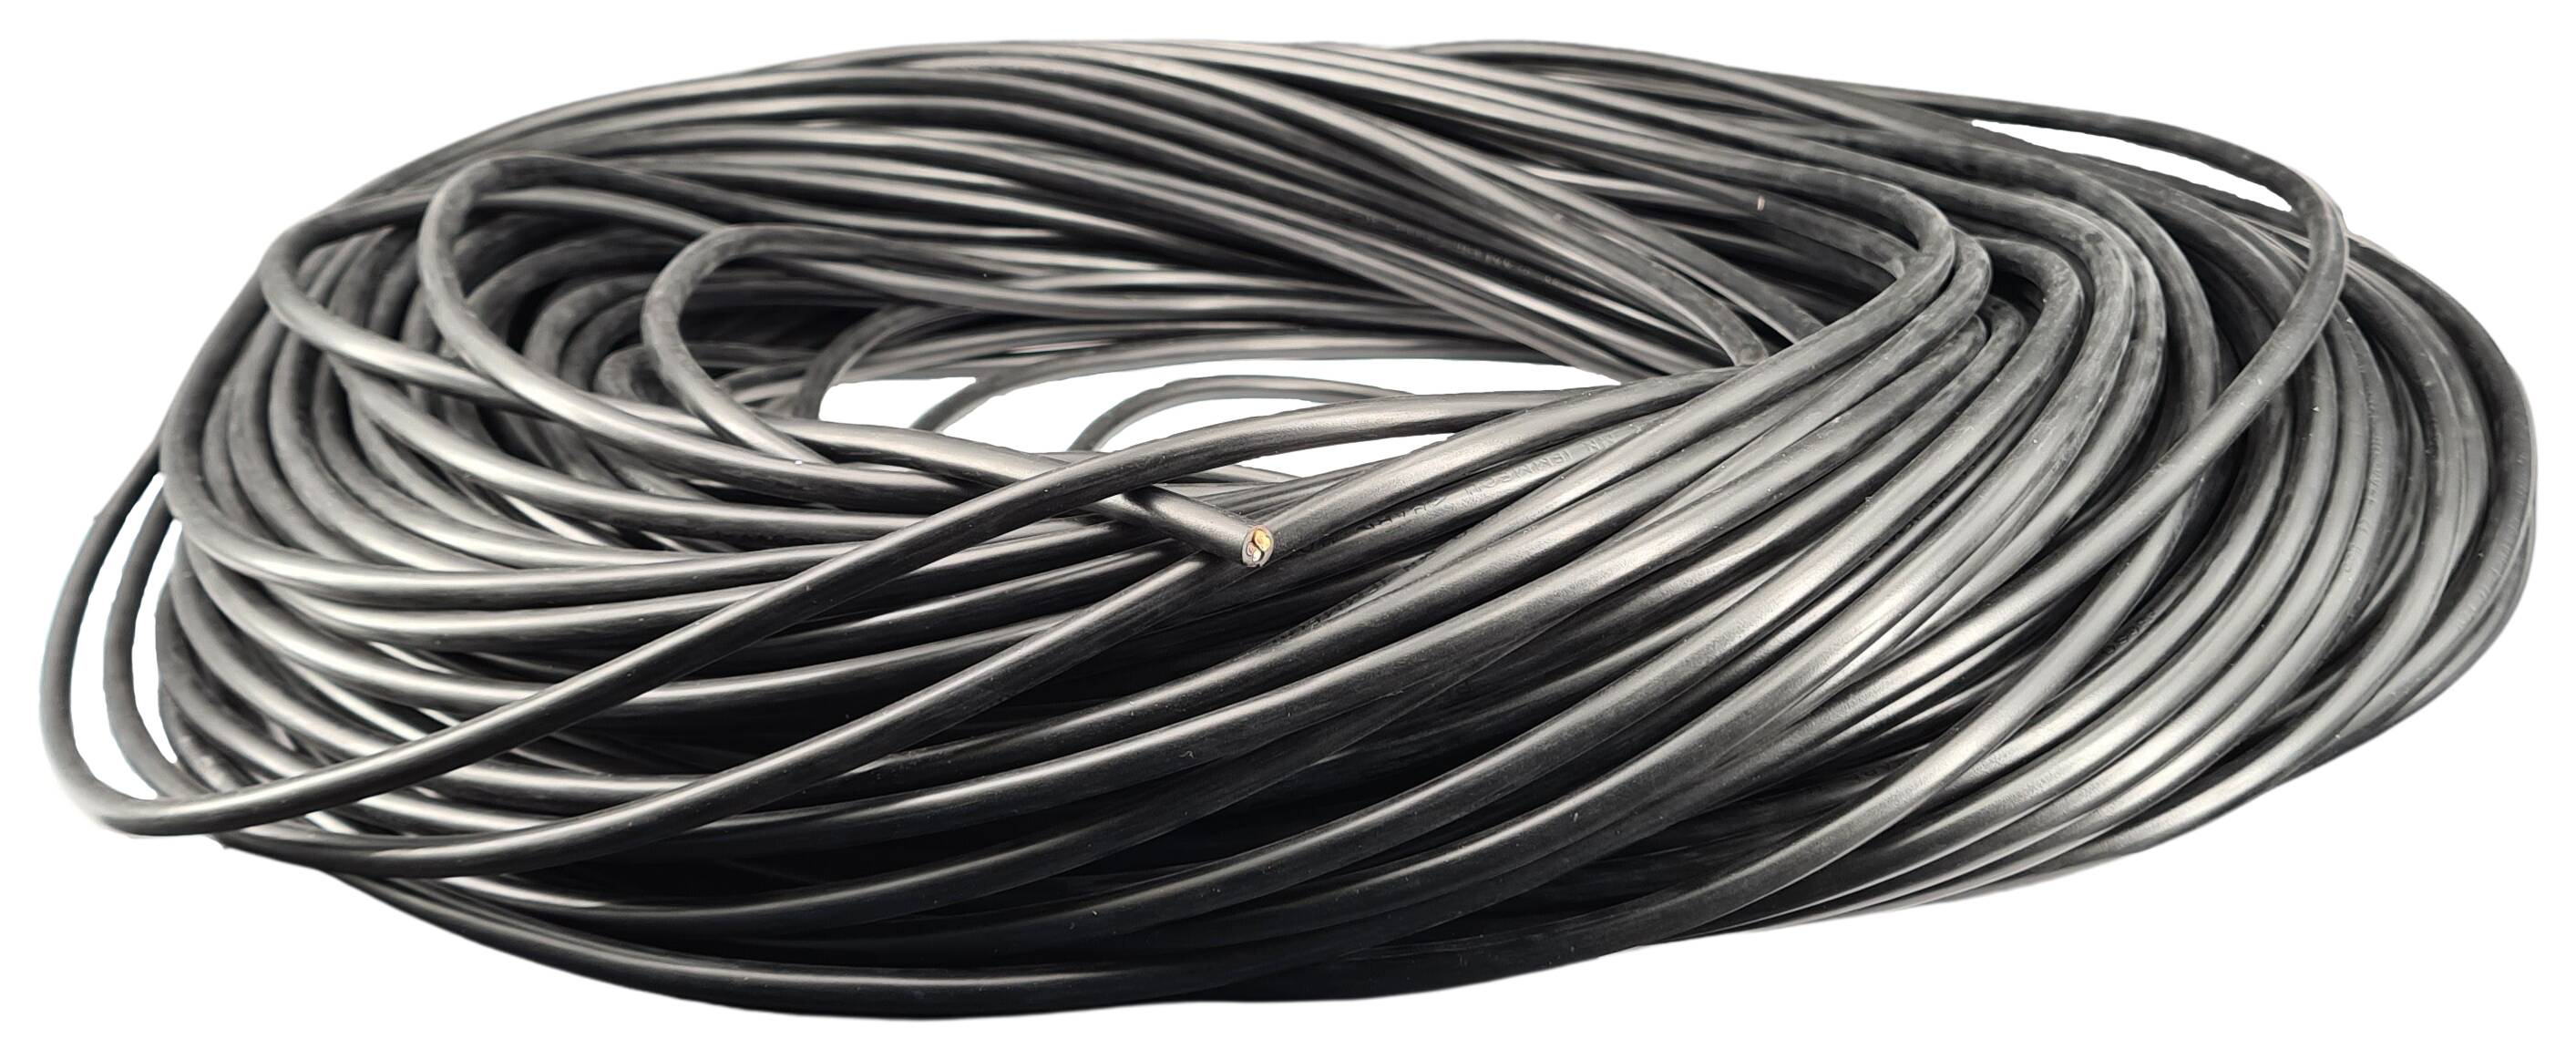 Kabel 4G 0,75 H03VV-F rund schwarz